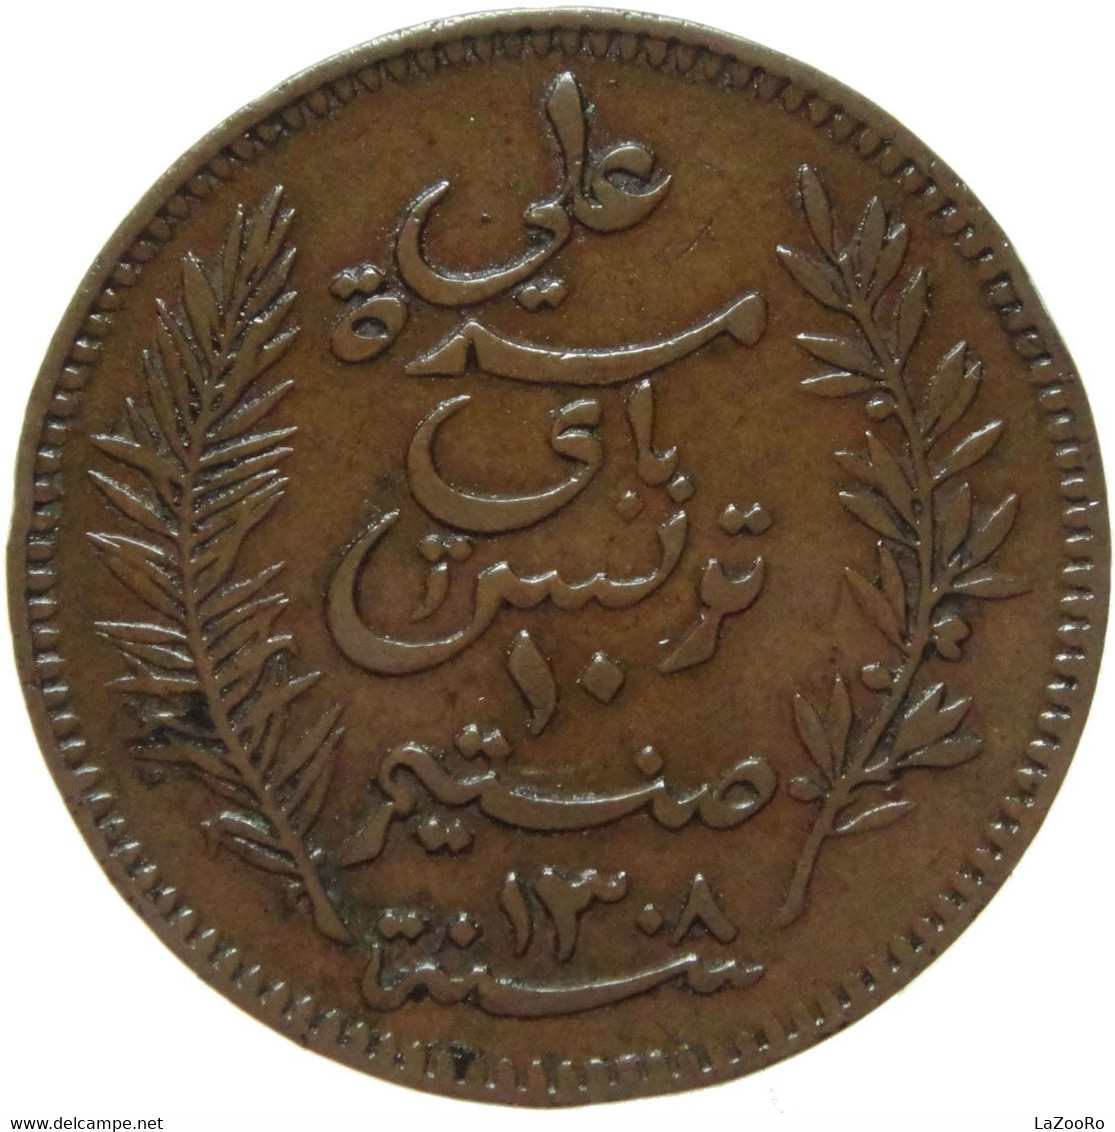 LaZooRo: Tunisia 10 Centimes 1891 XF - Tunisia